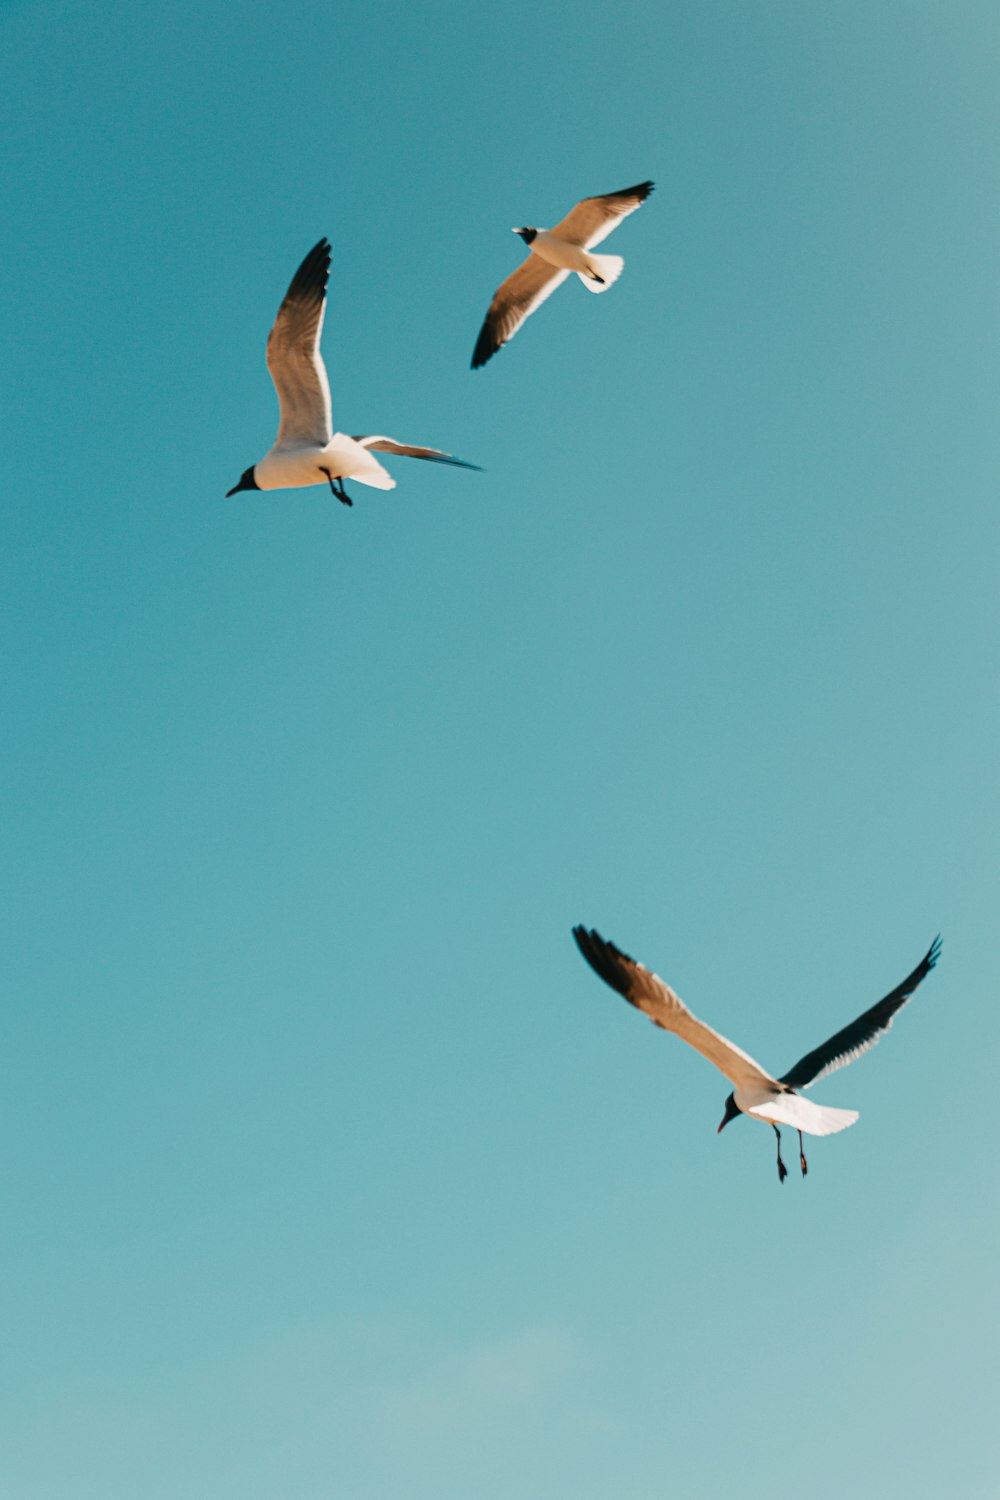 pájaros blancos y negros volando bajo el cielo azul durante el día